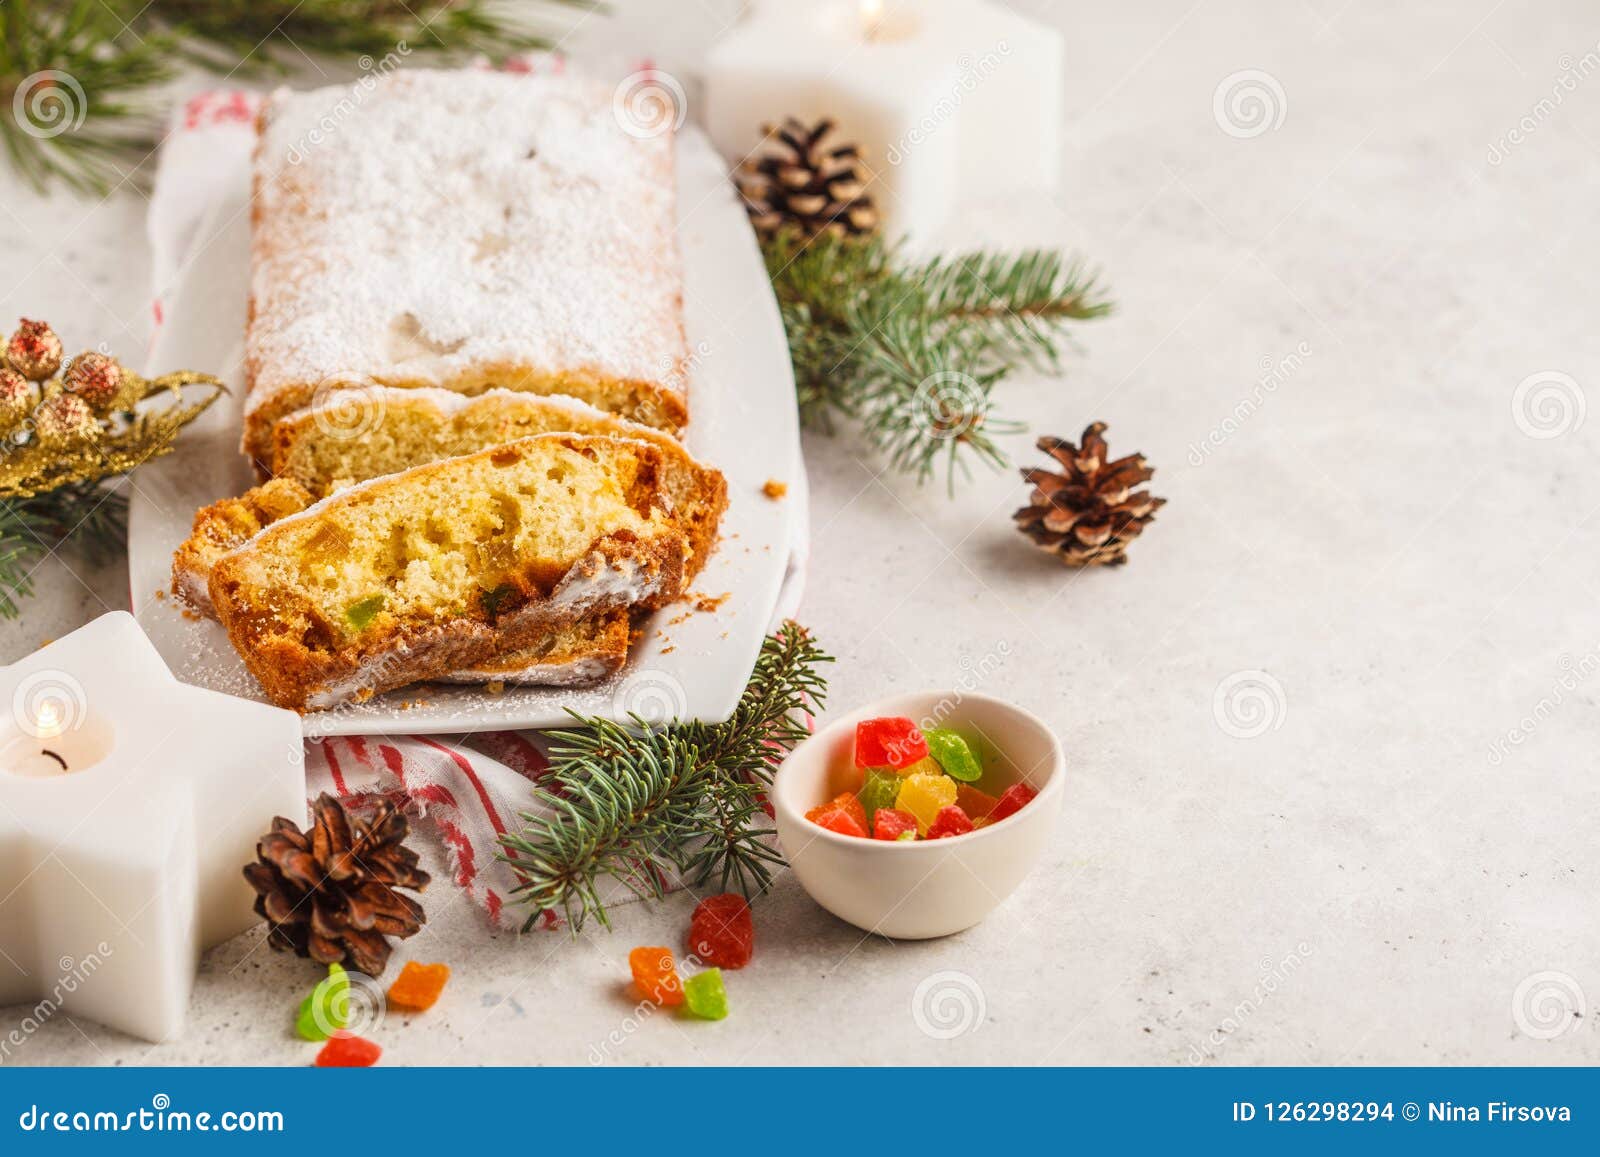 可爱的圣诞节特制小面包图片手机壁纸 - 手机壁纸 - 桌面天下（Desktx.com）